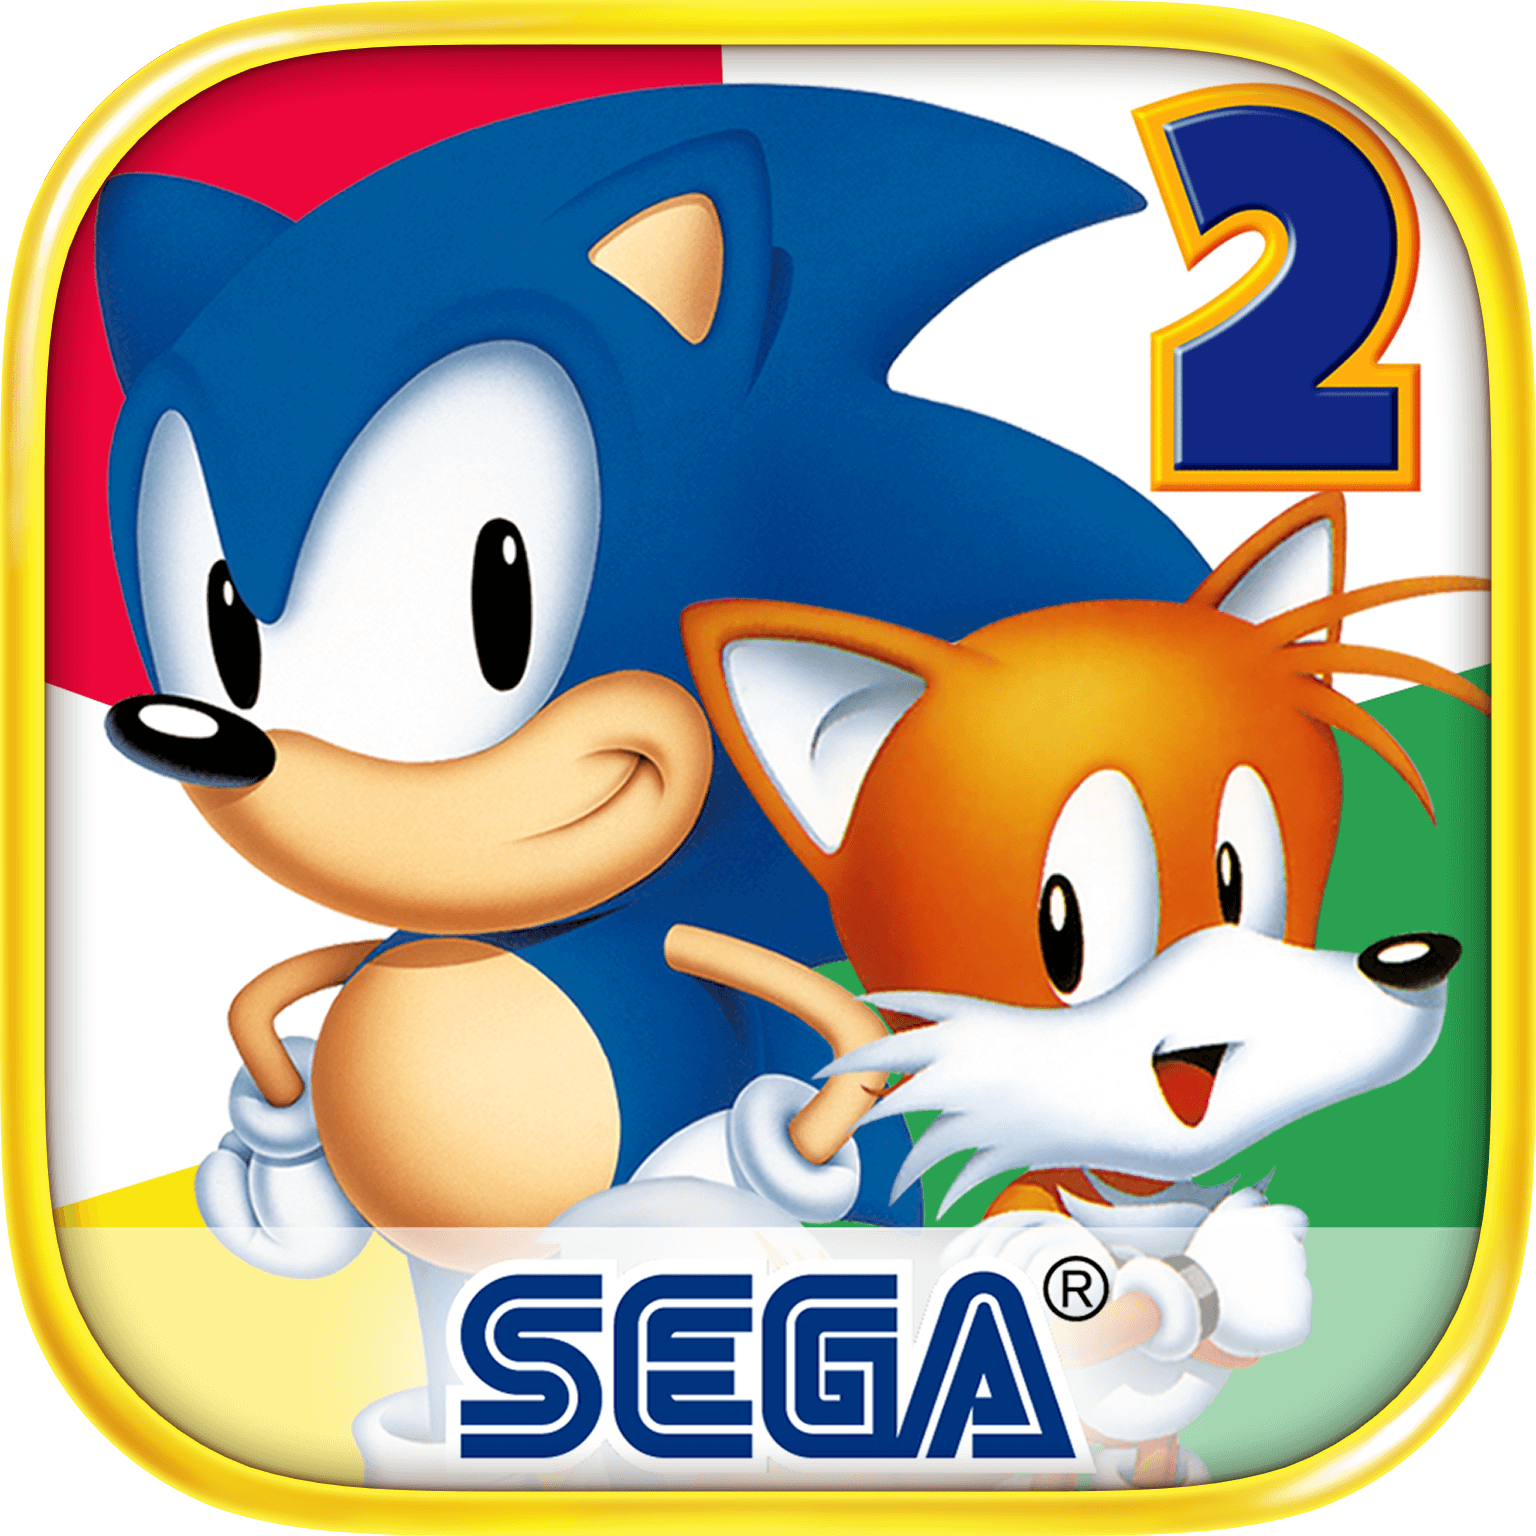 Sonic the hedgehog 2 андроид. Соник хеджхог 2. Sonic 2 сега. Sonic the Hedgehog 2 русская версия. Sonic the Hedgehog 2 на андроид.